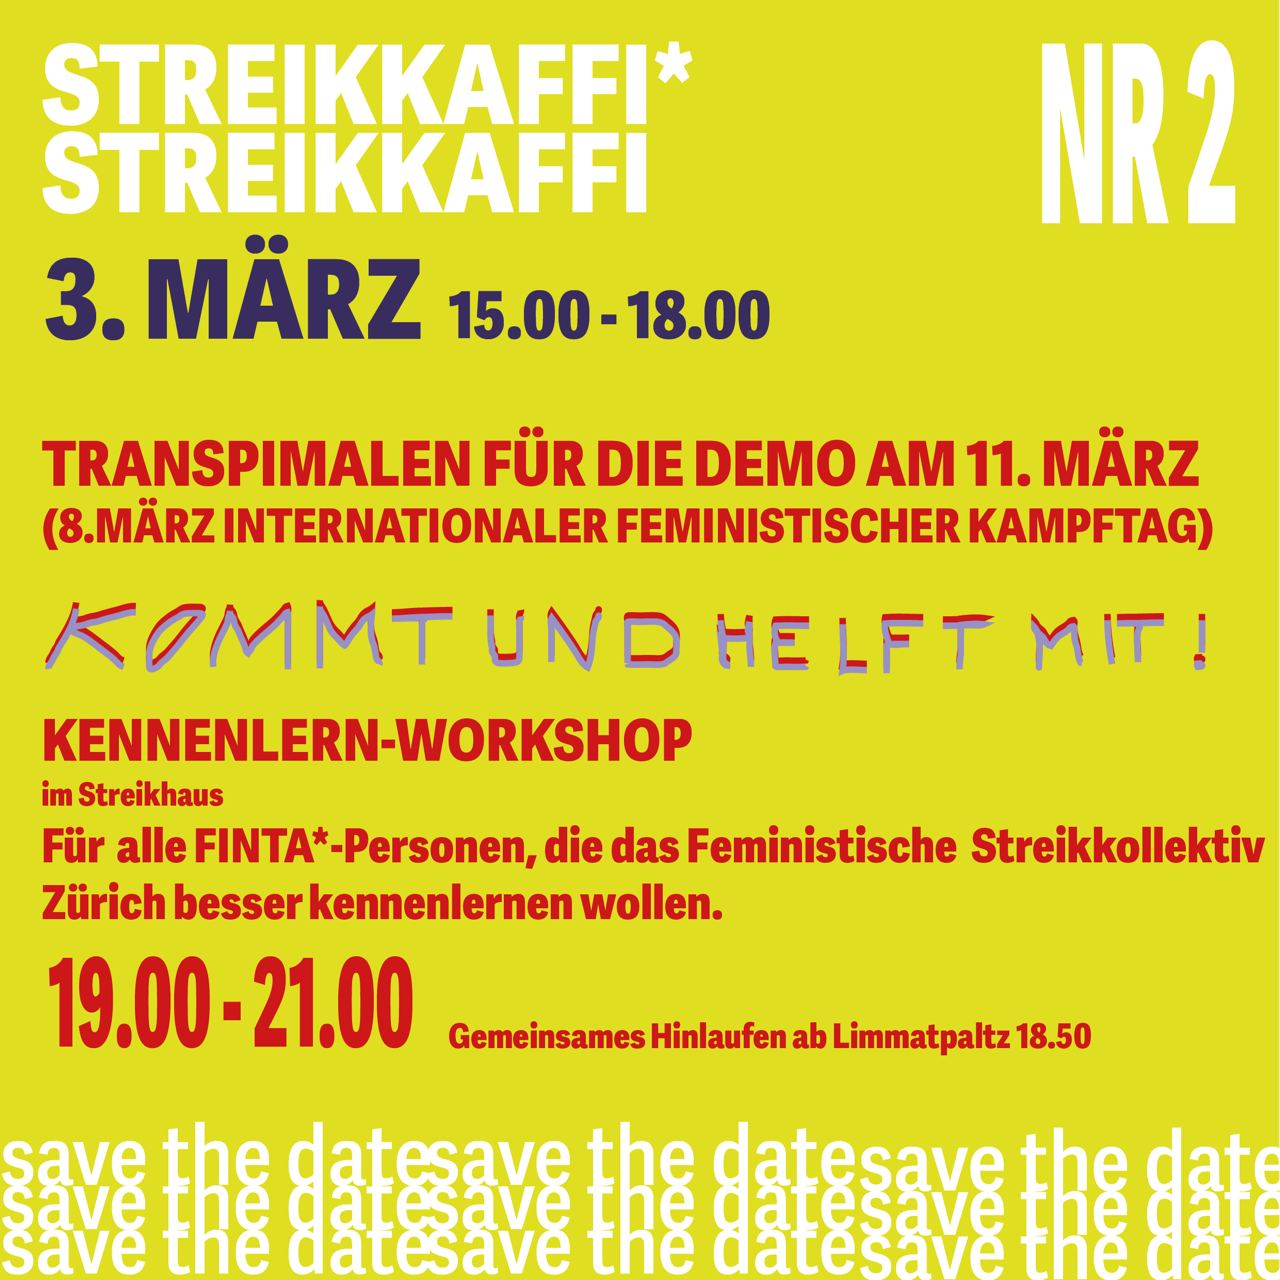 auf gelbem Hintergrund in rot, weiss und schwarz de Aufruf zum Streikkafi, Infos siehe in der Agenda